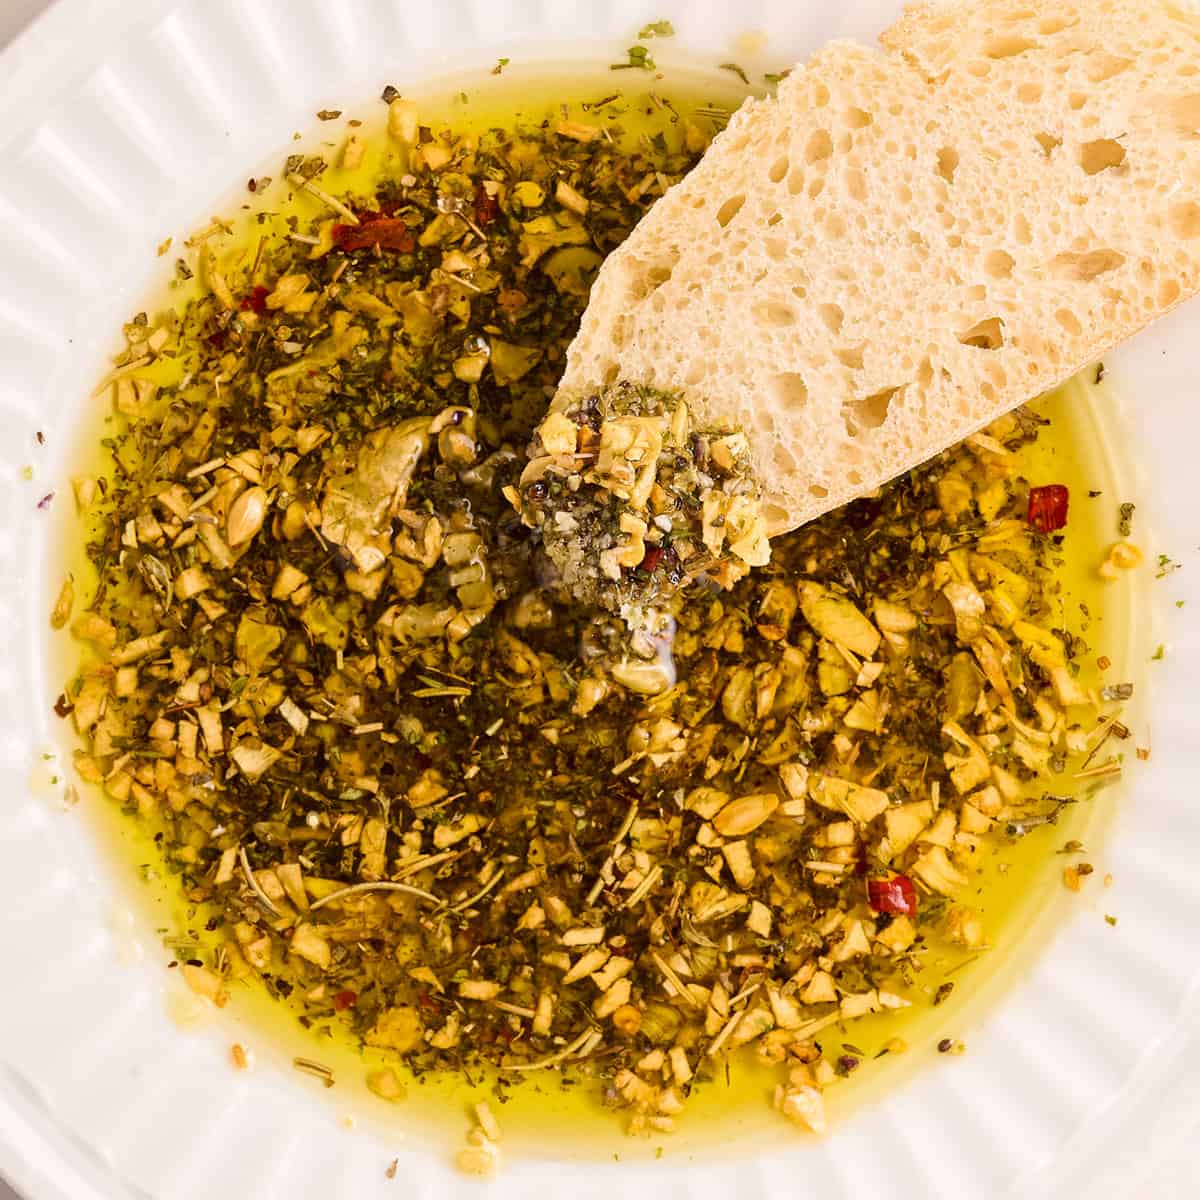 Olive Oil Bread Dip